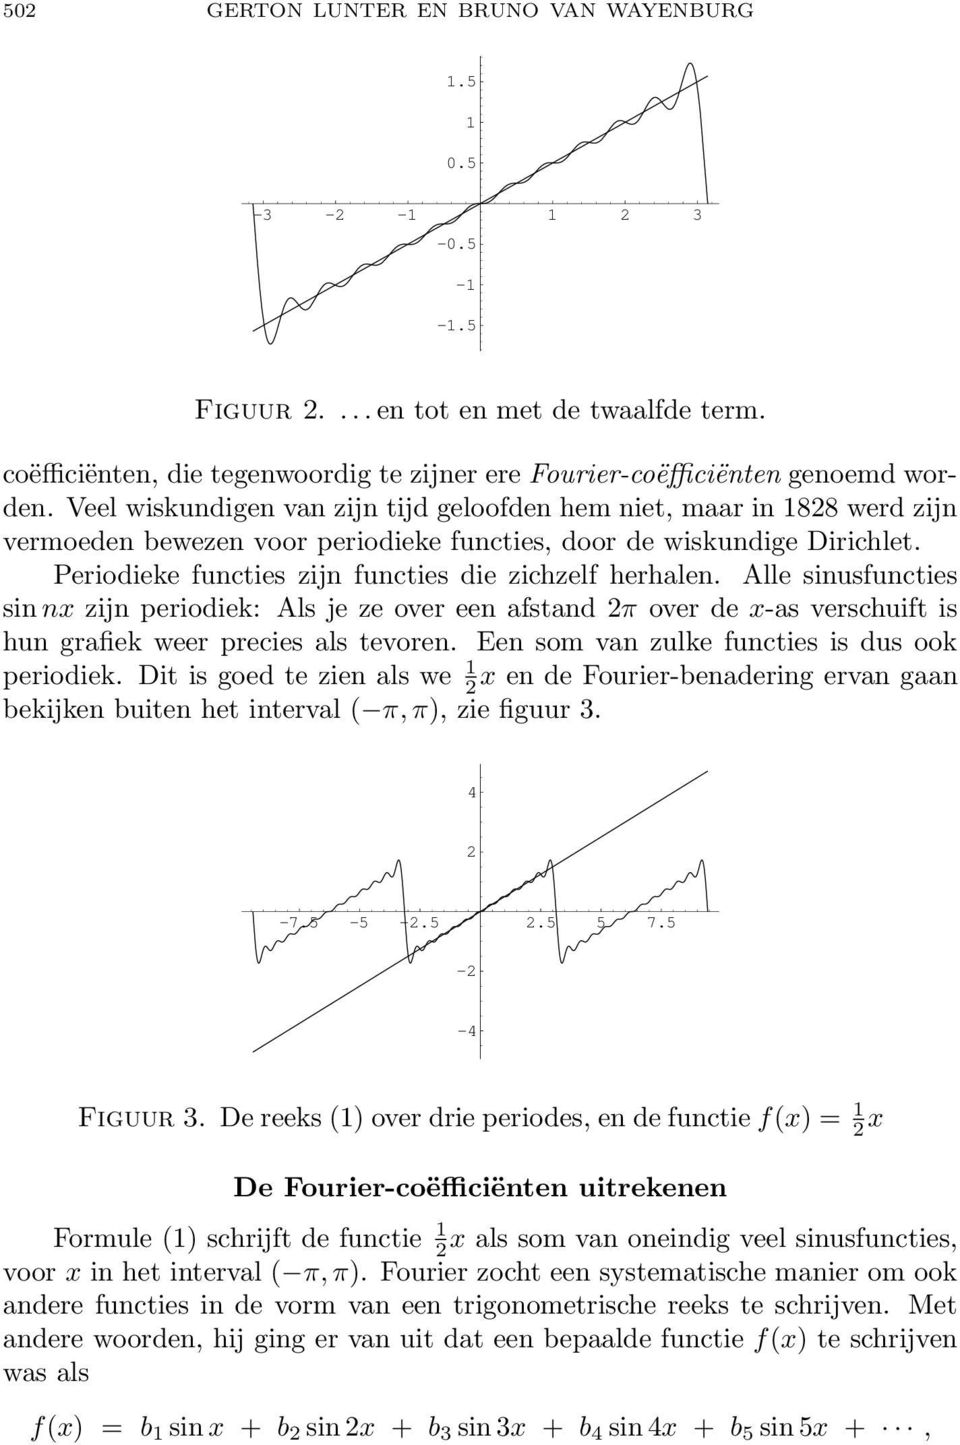 Periodieke functies zijn functies die zichzelf herhalen. Alle sinusfuncties sin nx zijn periodiek: Als je ze over een afstand π over de x-as verschuift is hun grafiek weer precies als tevoren.